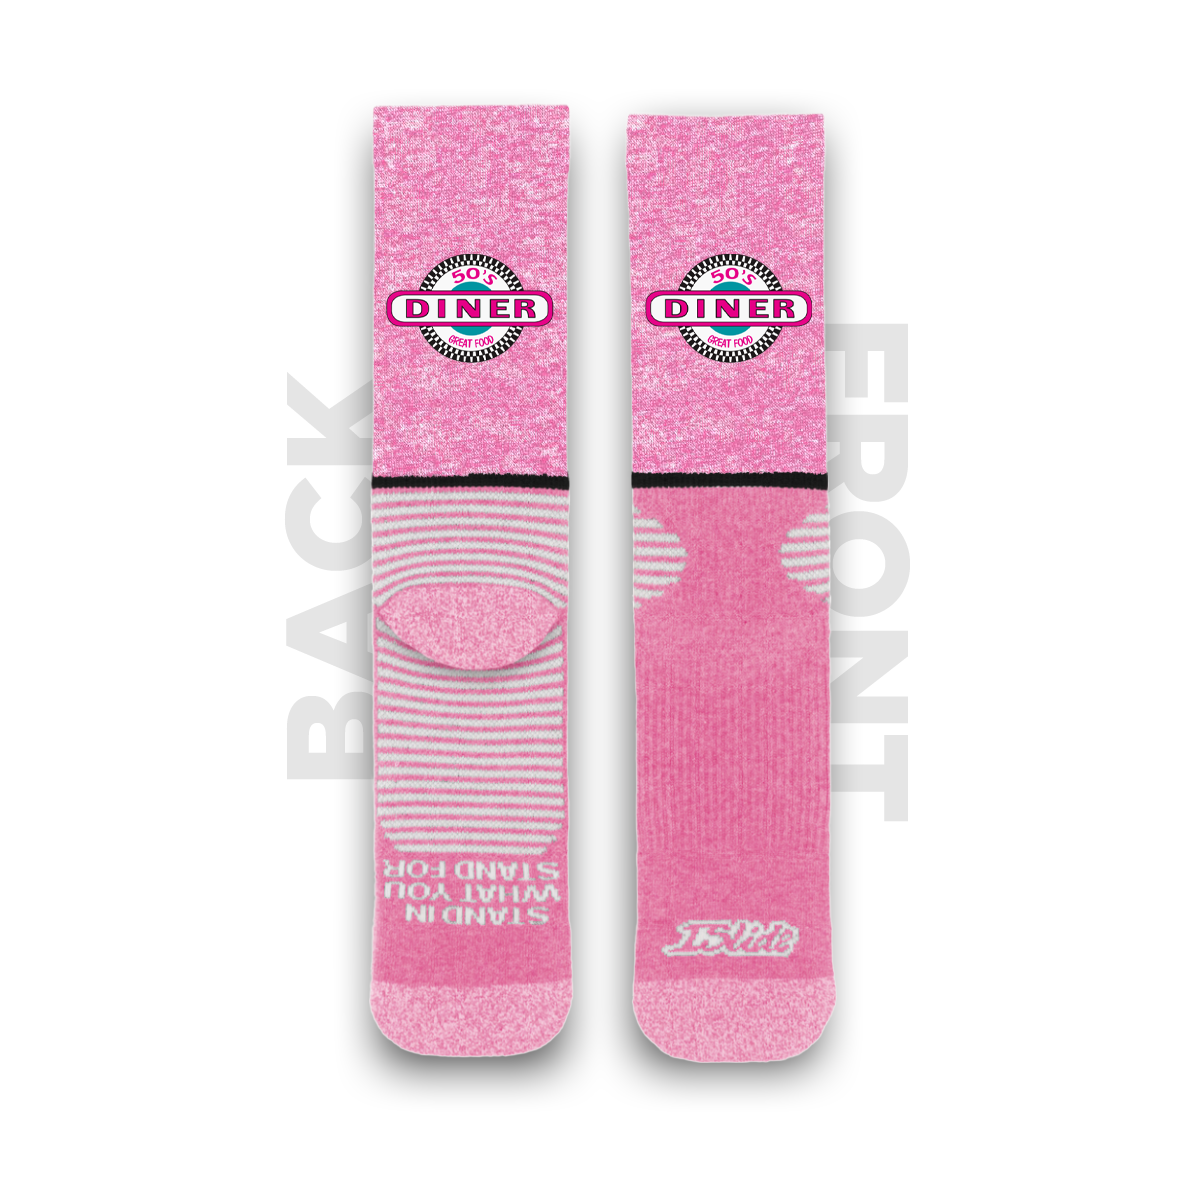 50s Diner Pink Socks